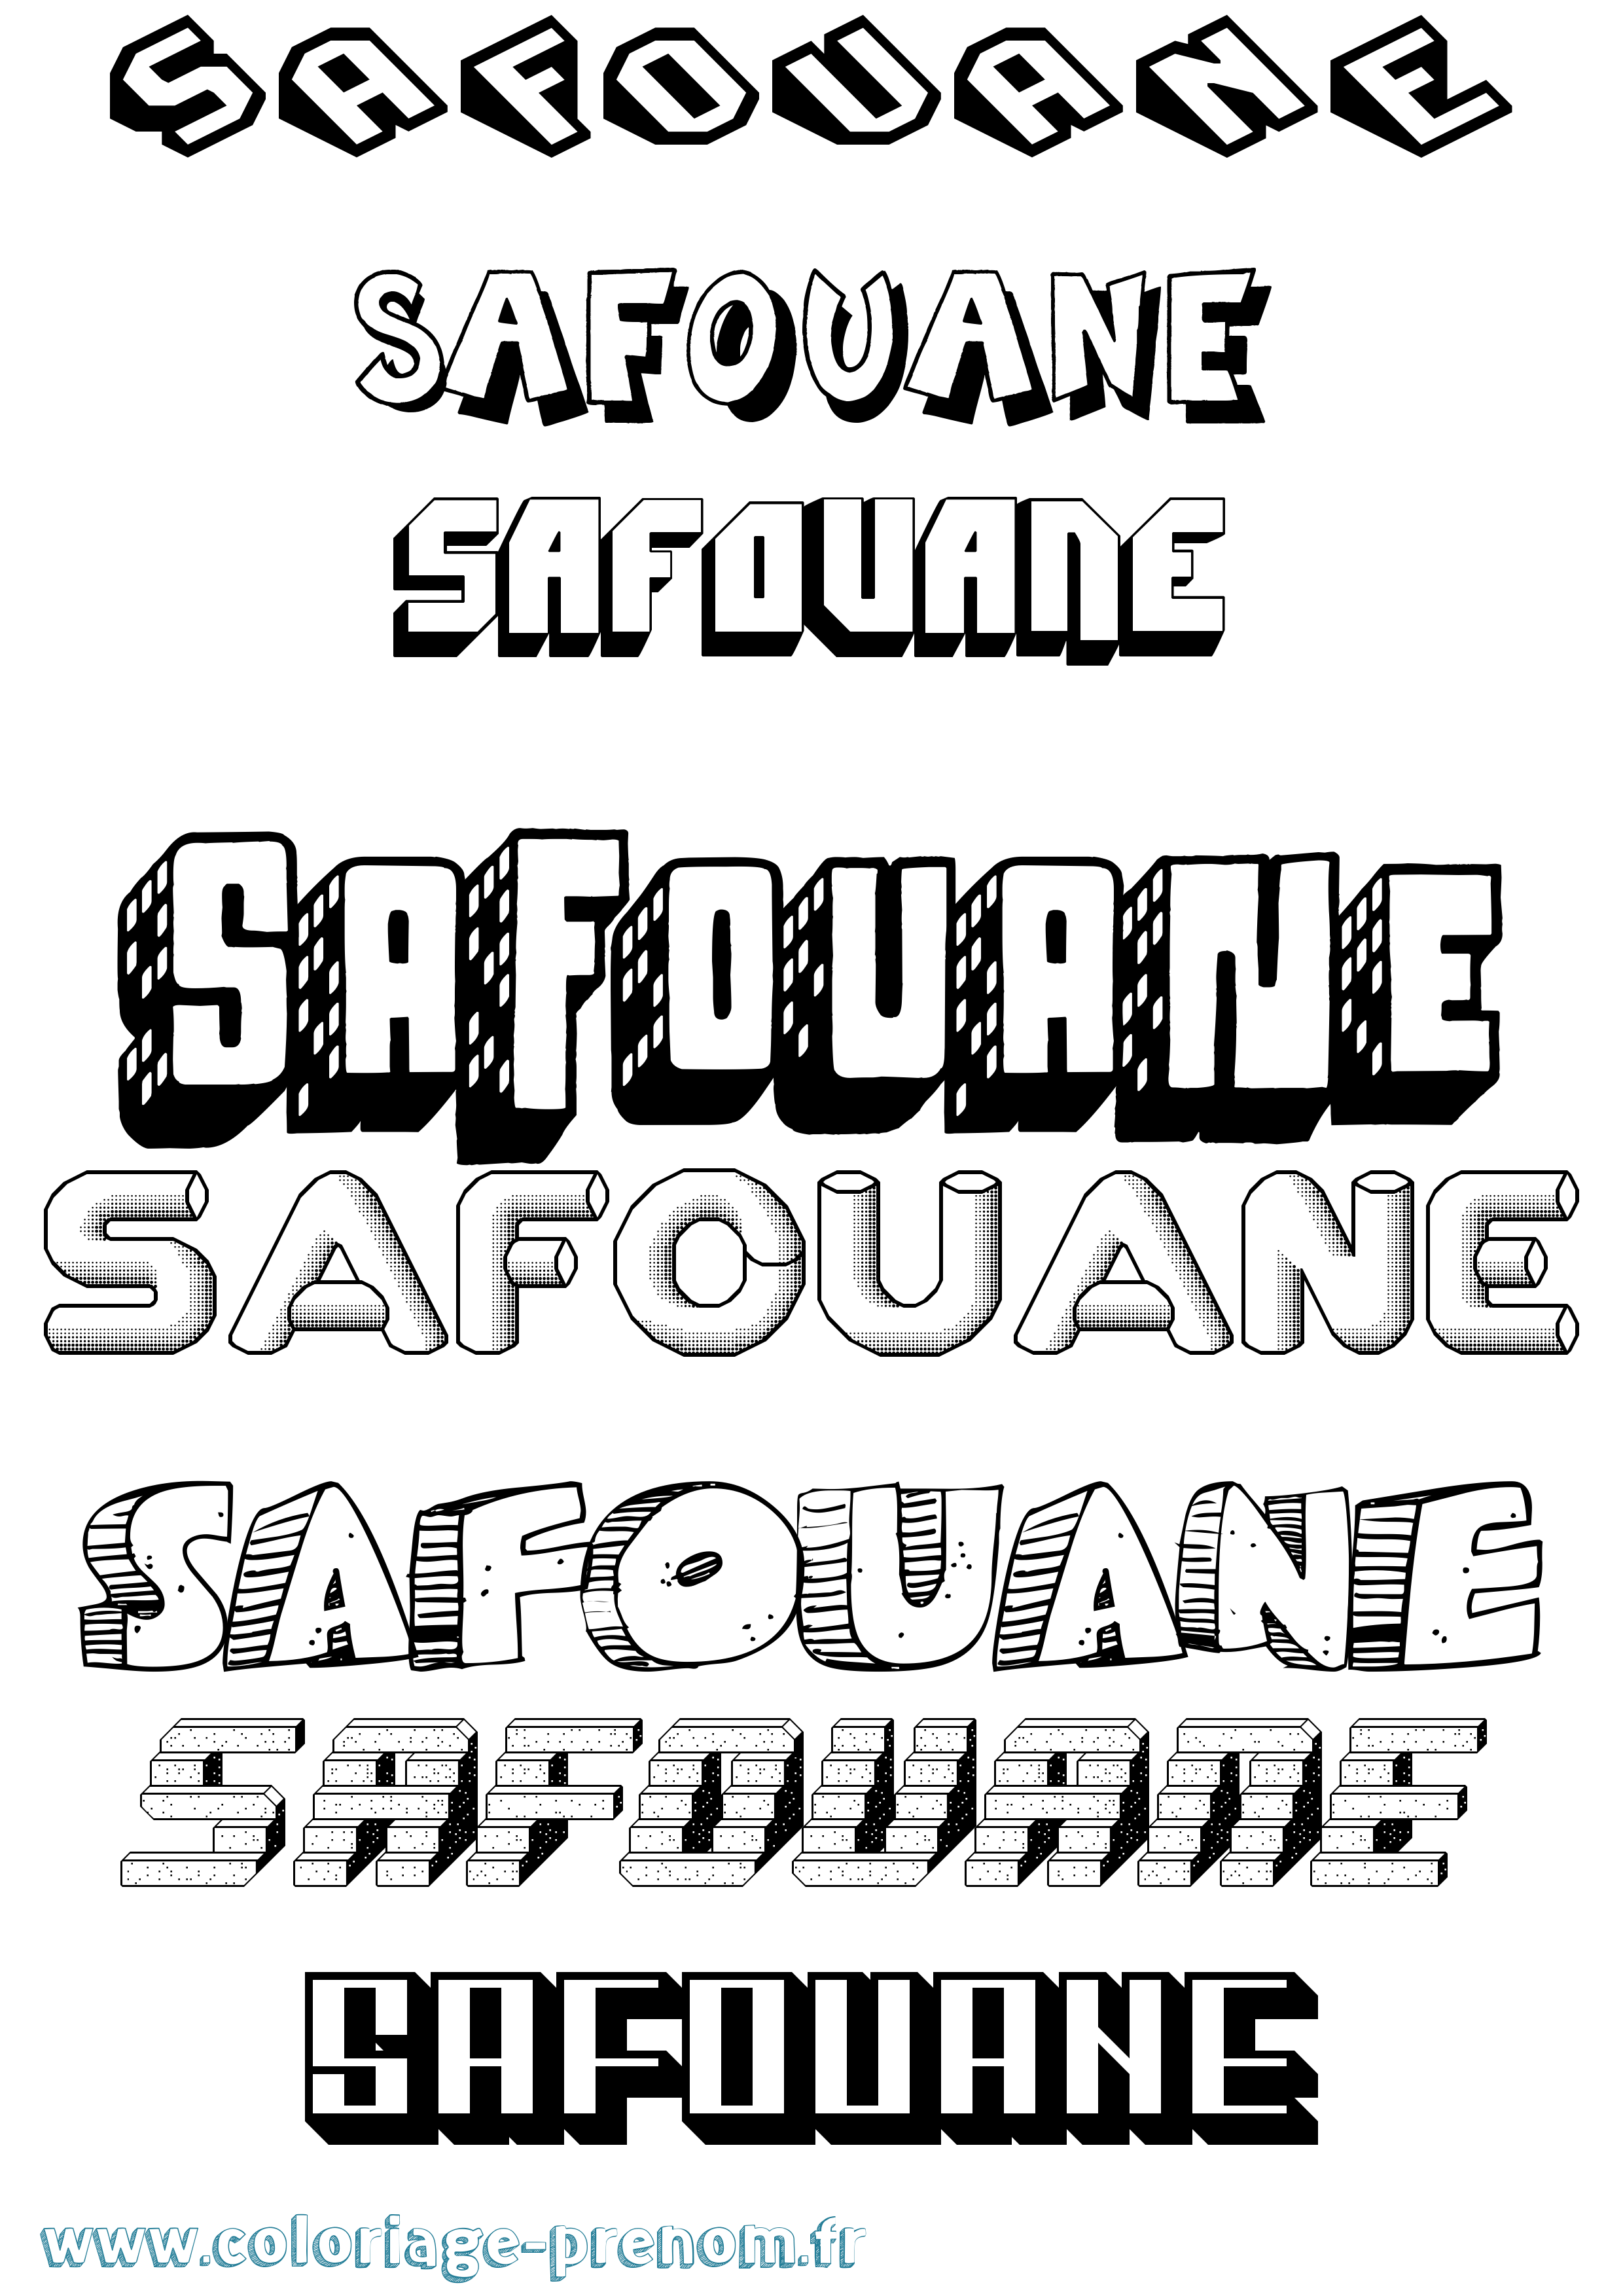 Coloriage prénom Safouane Effet 3D